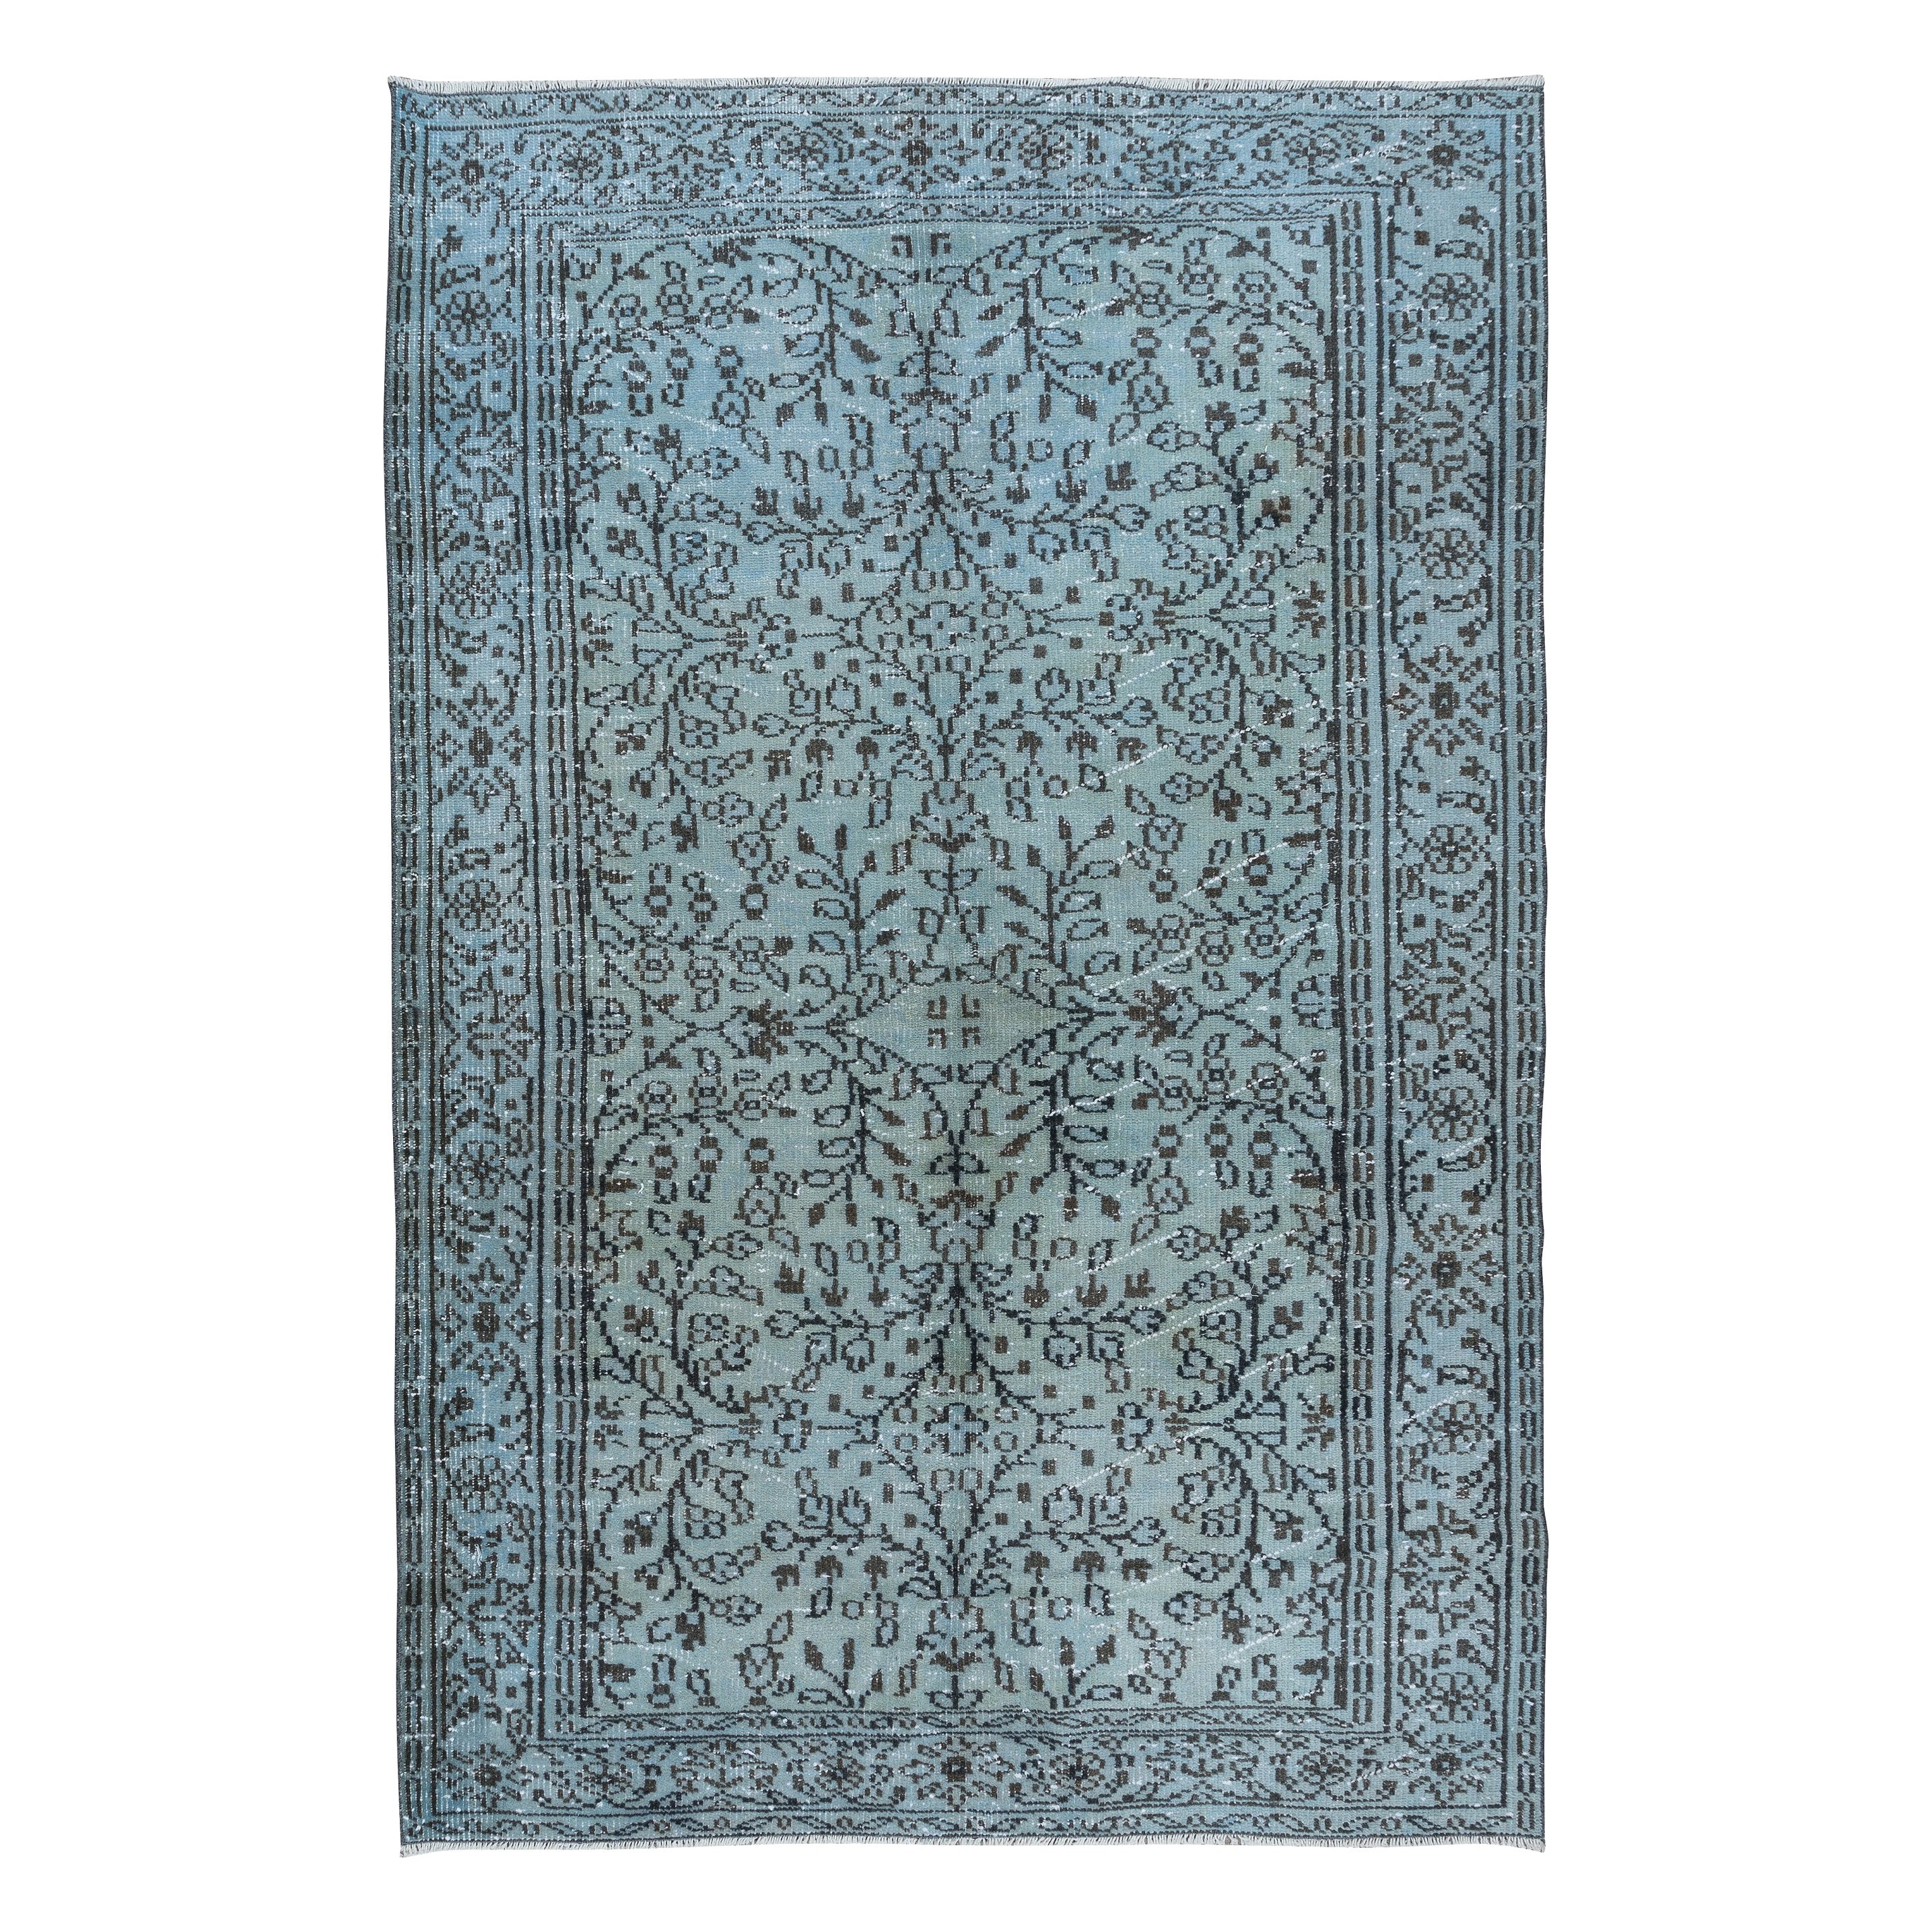 5.3x8 Ft Ethnic Handmade Turkish Rug in Light Blue, Vintage Floral Carpet For Sale